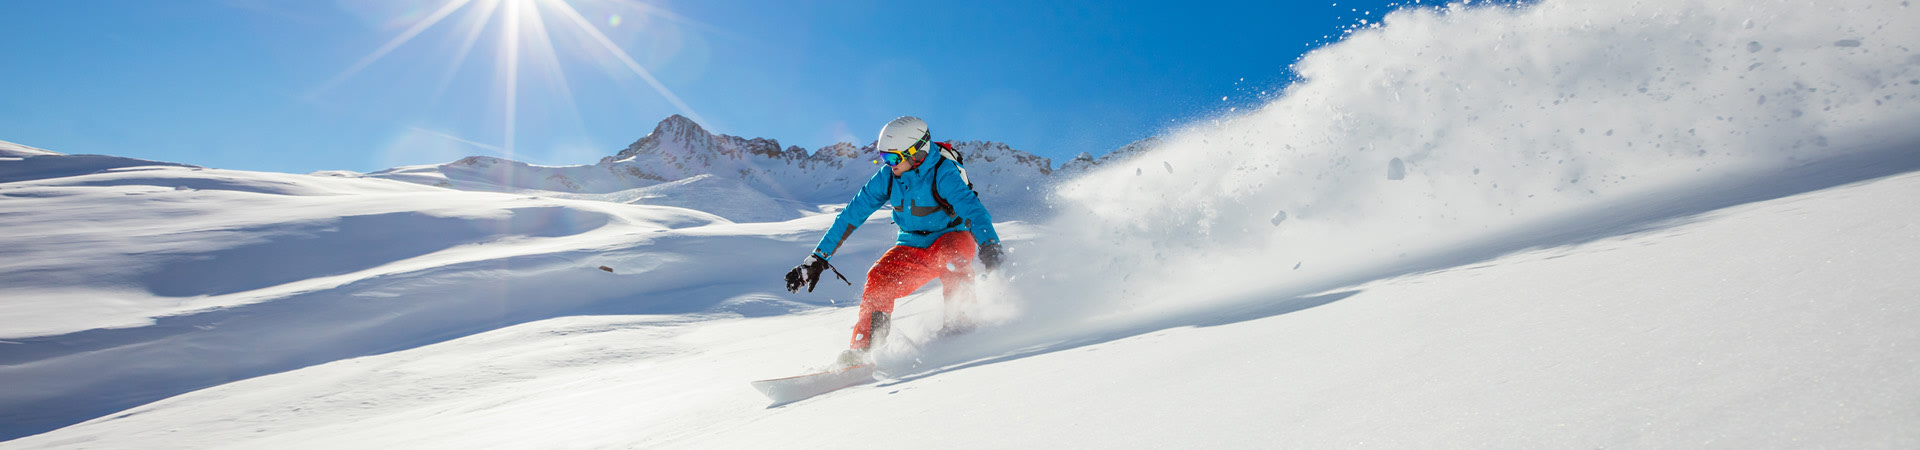 Località sciistiche Italia: uno sciatore su una pista da sci.